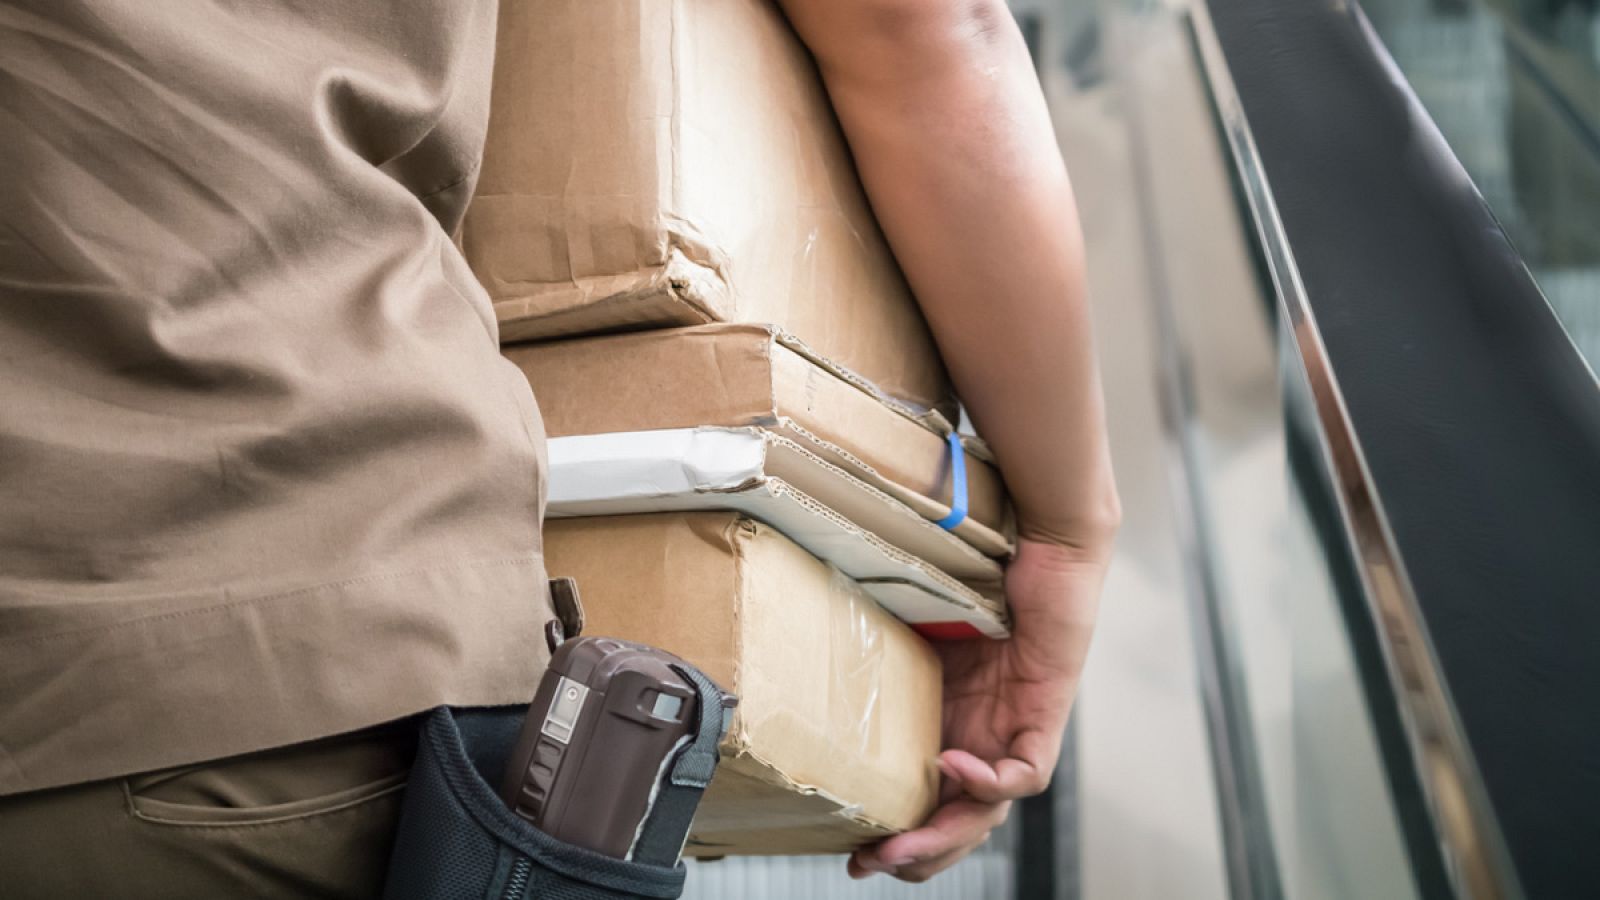 Un trabajador de una empresa de mensajería carga varios paquetes